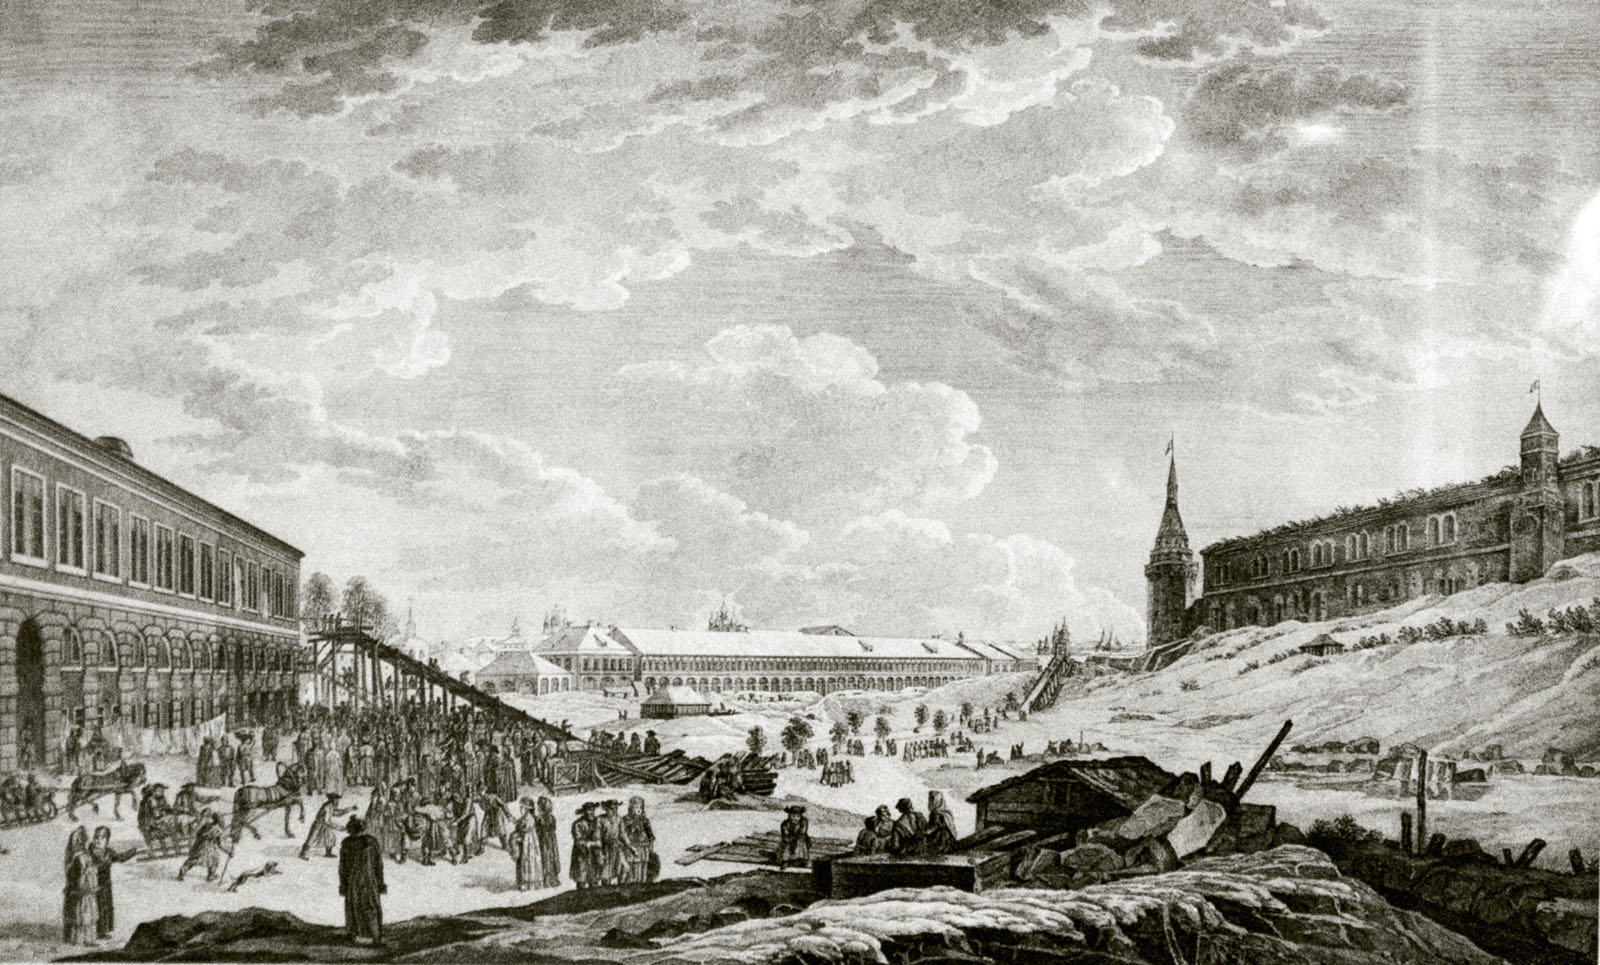 Вид Ледяных гор в Москве во время сырной недели (масленицы), фотограф Georg Oberkogler, 1799 год